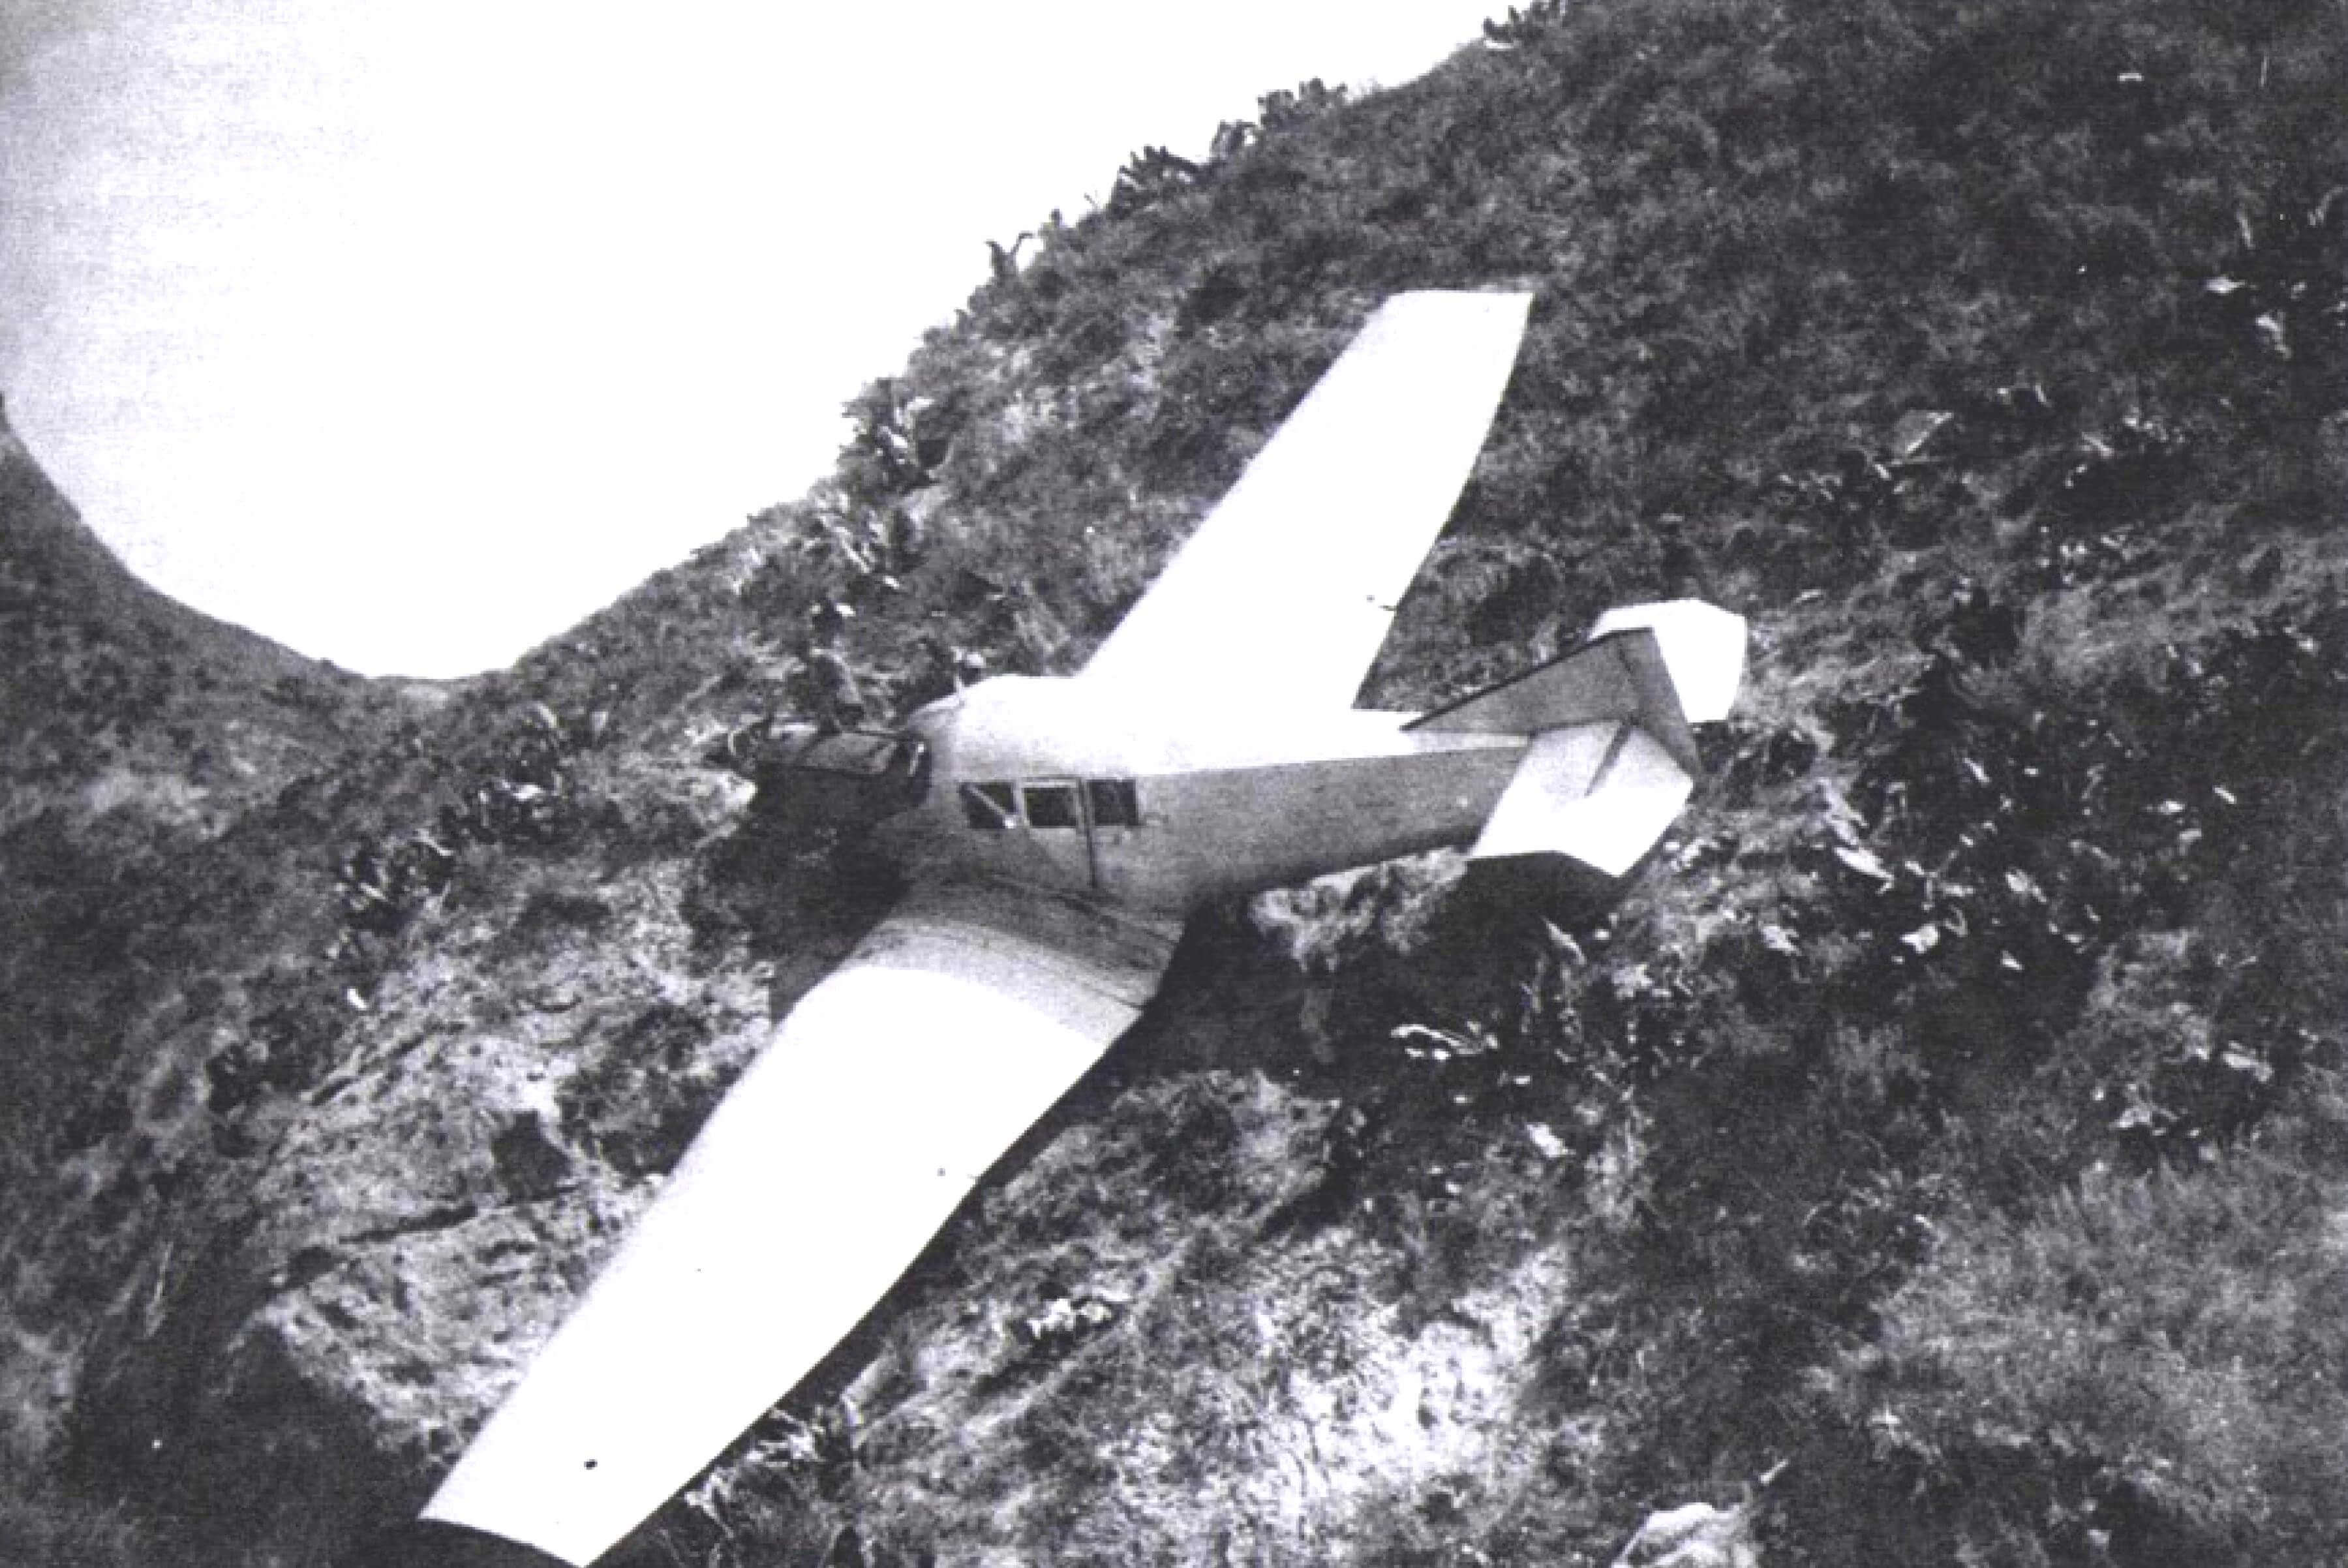 Вынужденная посадка на вершину скалы, осуществленная летчиком В. Голубевым 16 мая 1930 г. восточнее Куляба. Самолет принадлежал управлению 16-й авиабригады. Его удалось снять и отремонтировать!